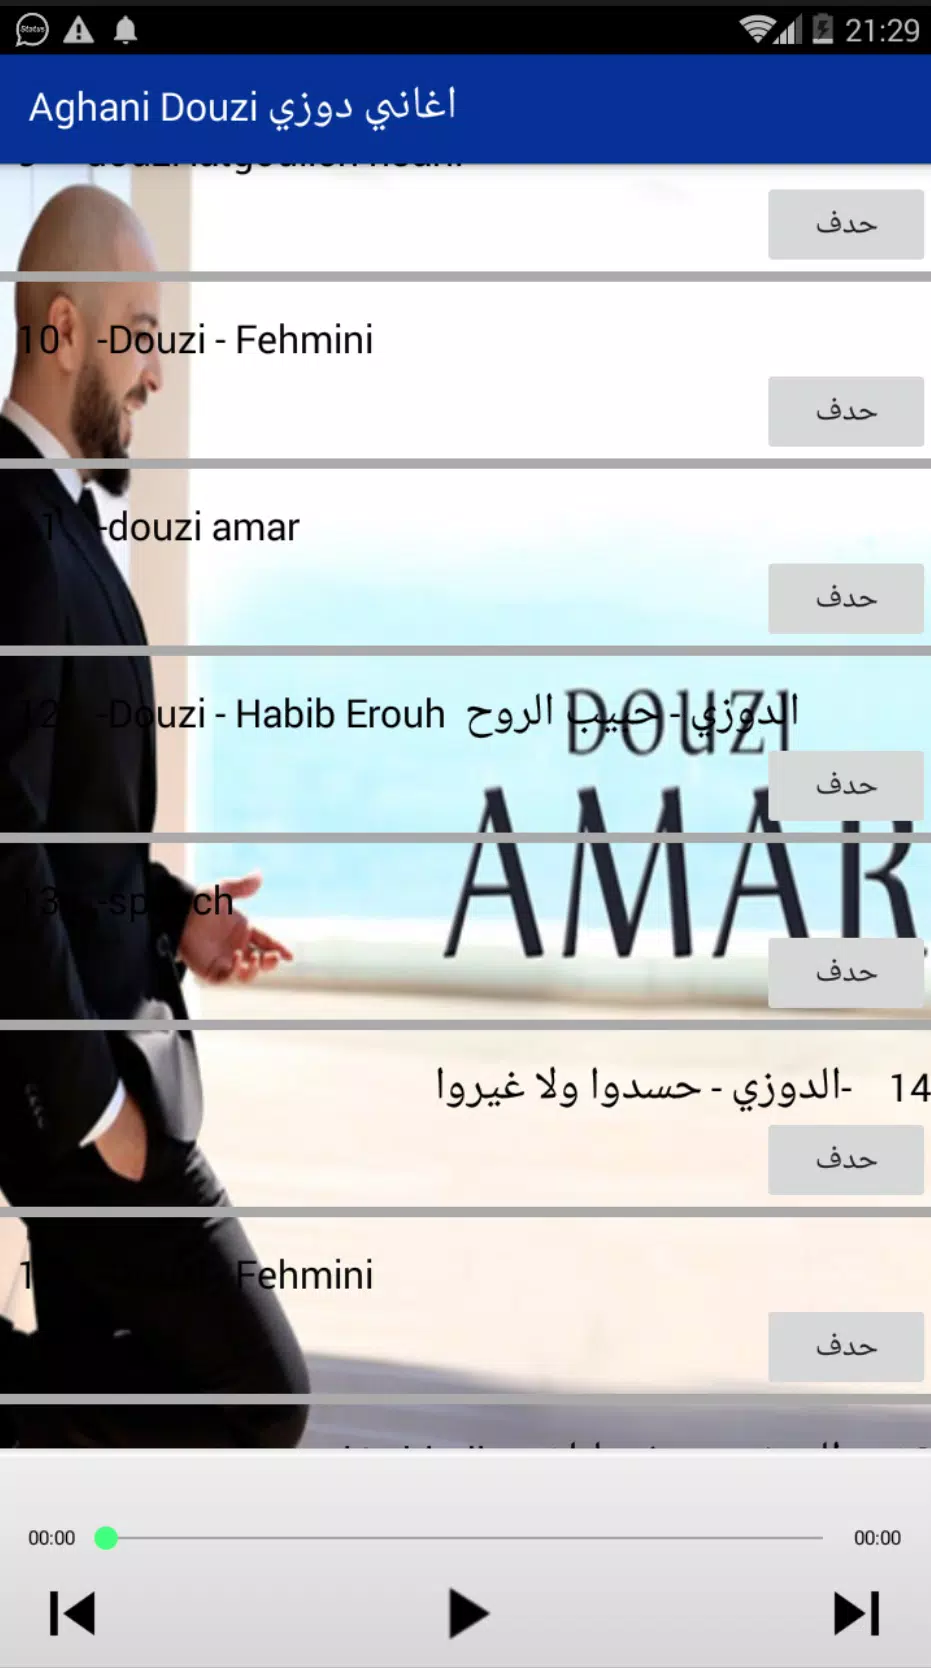 اغاني دوزي APK for Android Download